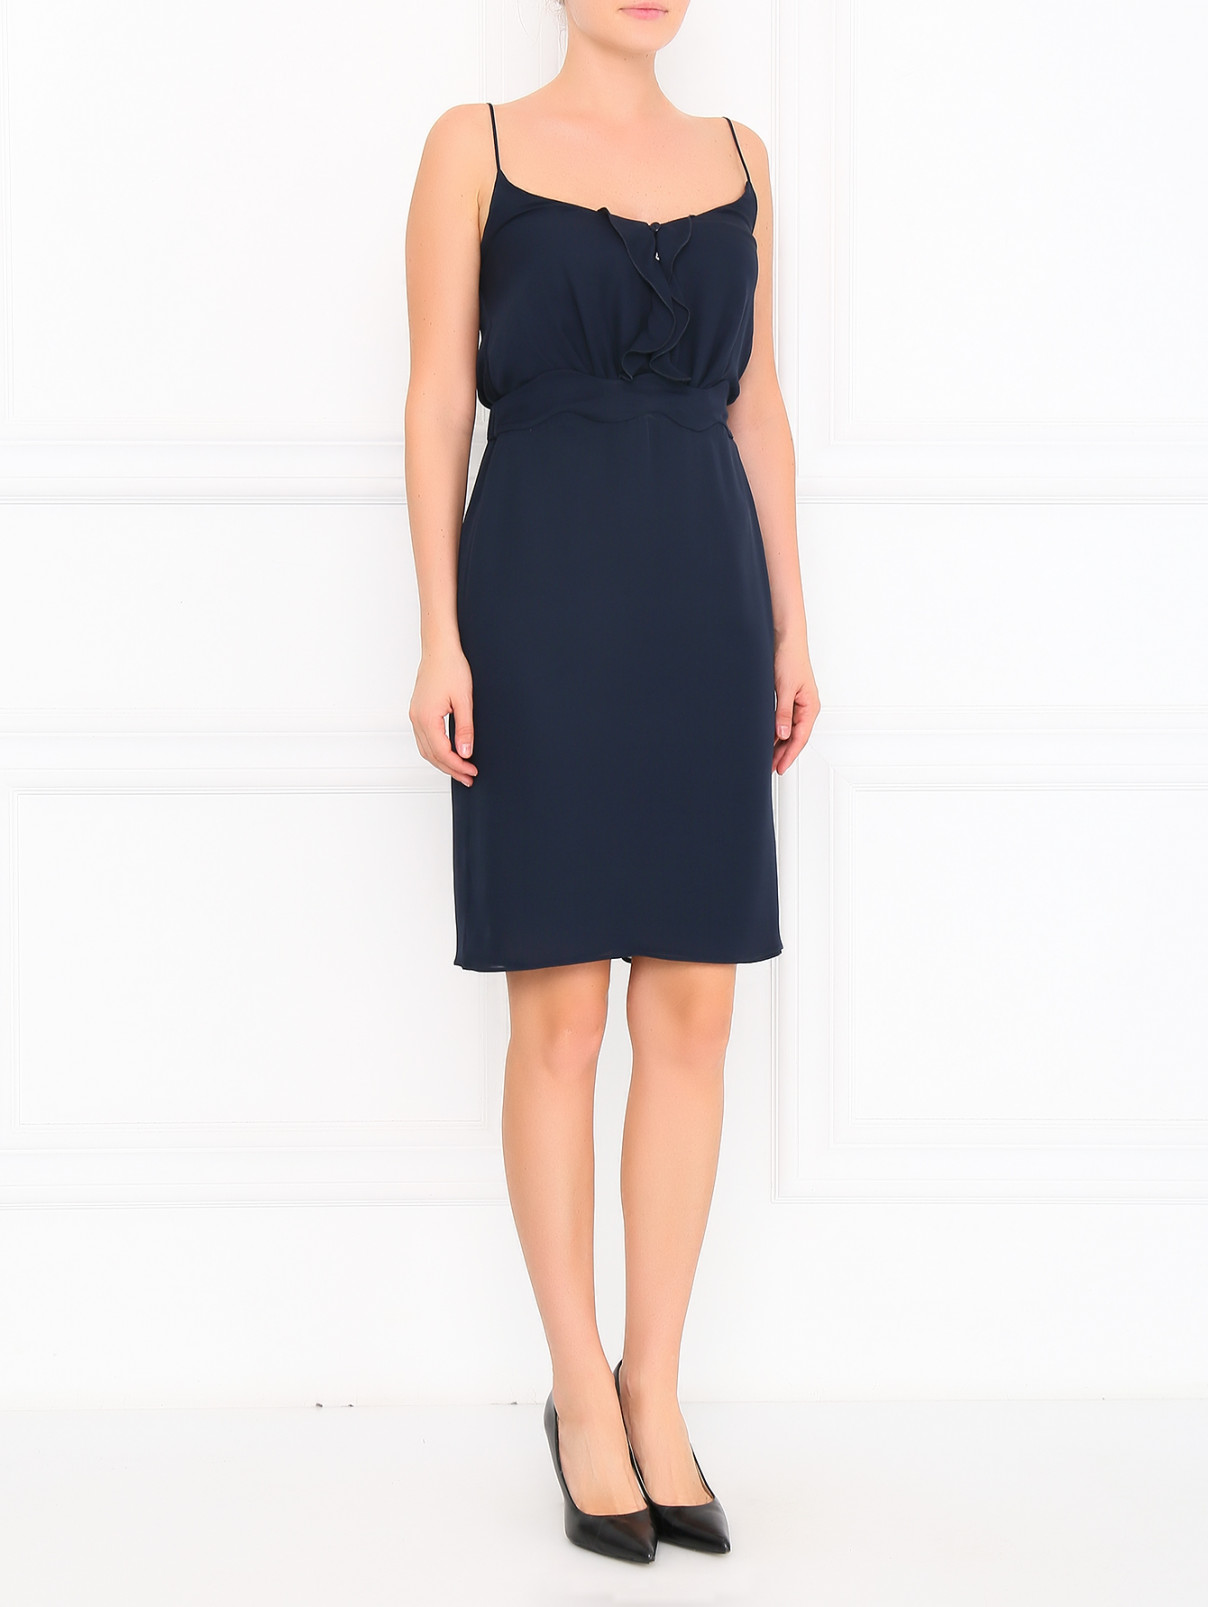 Платье из шелка с отделкой Emporio Armani  –  Модель Общий вид  – Цвет:  Синий